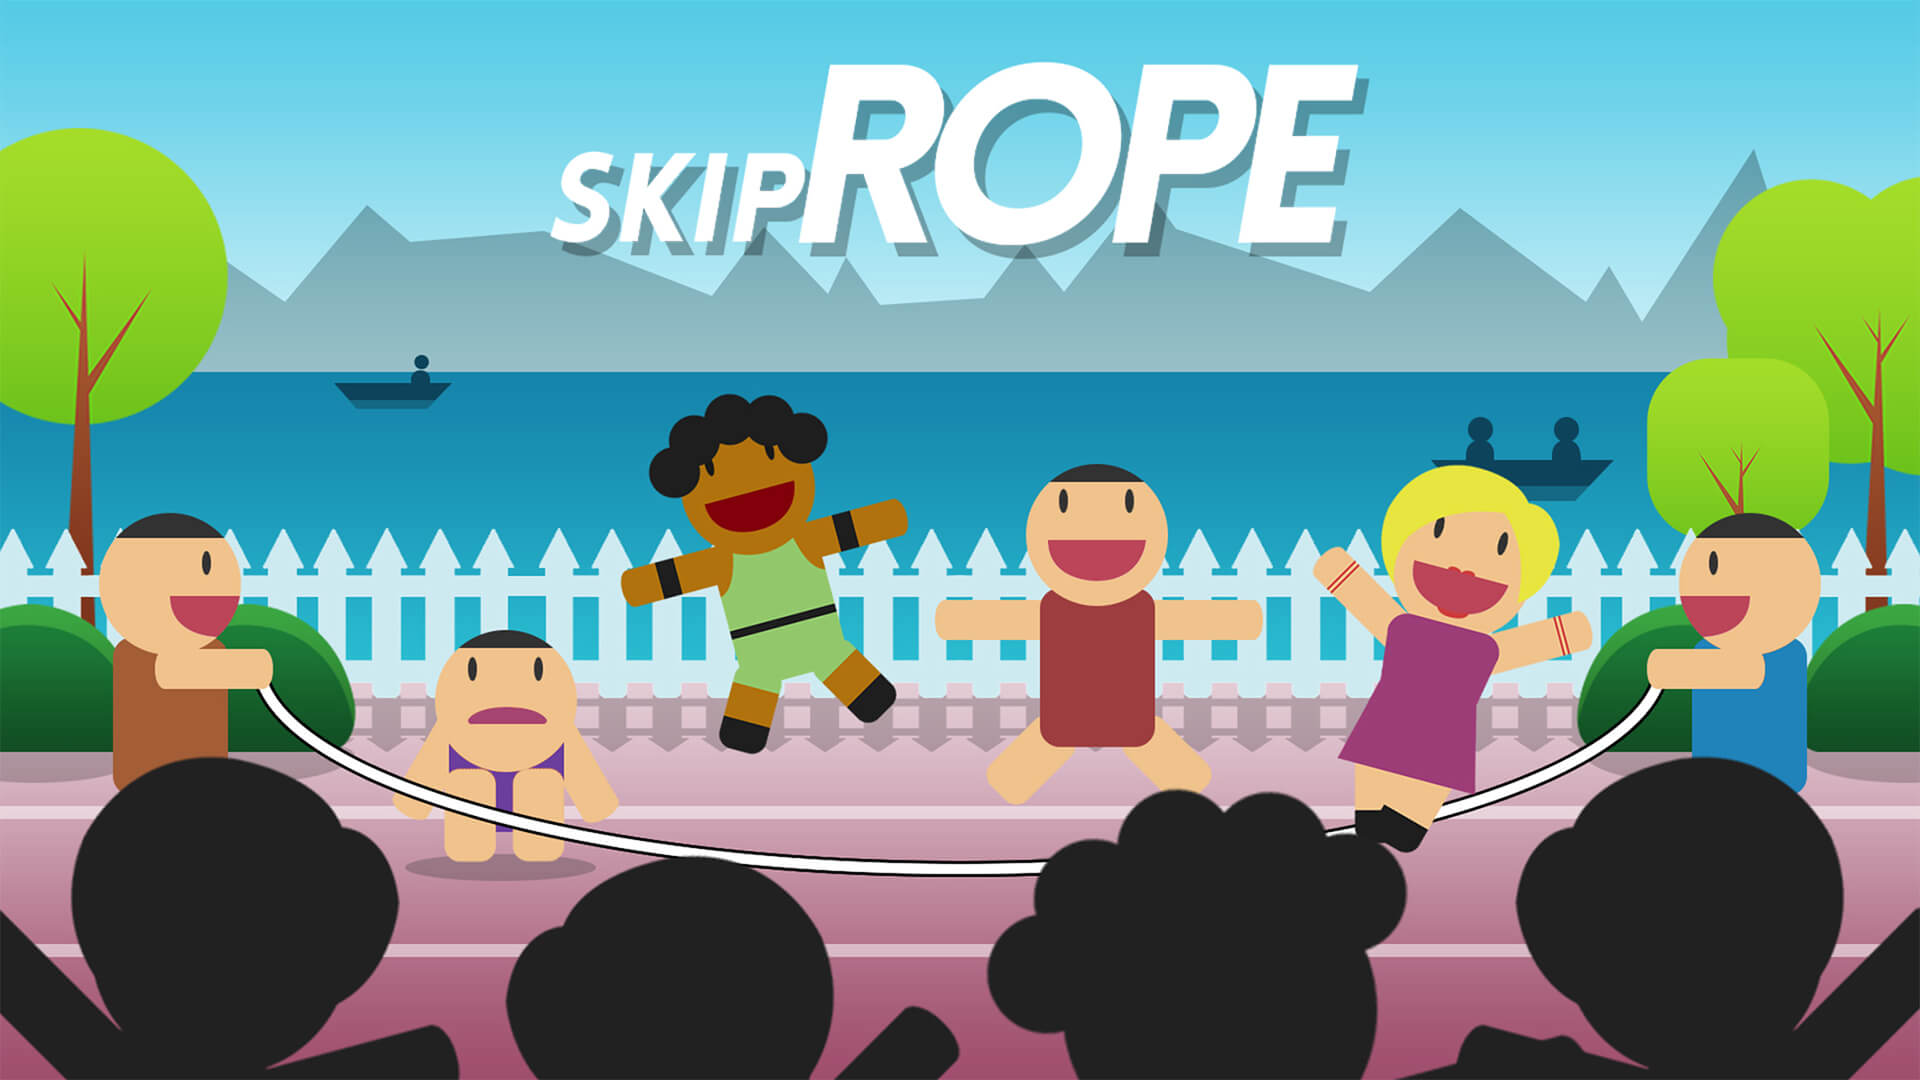 Skip Rope